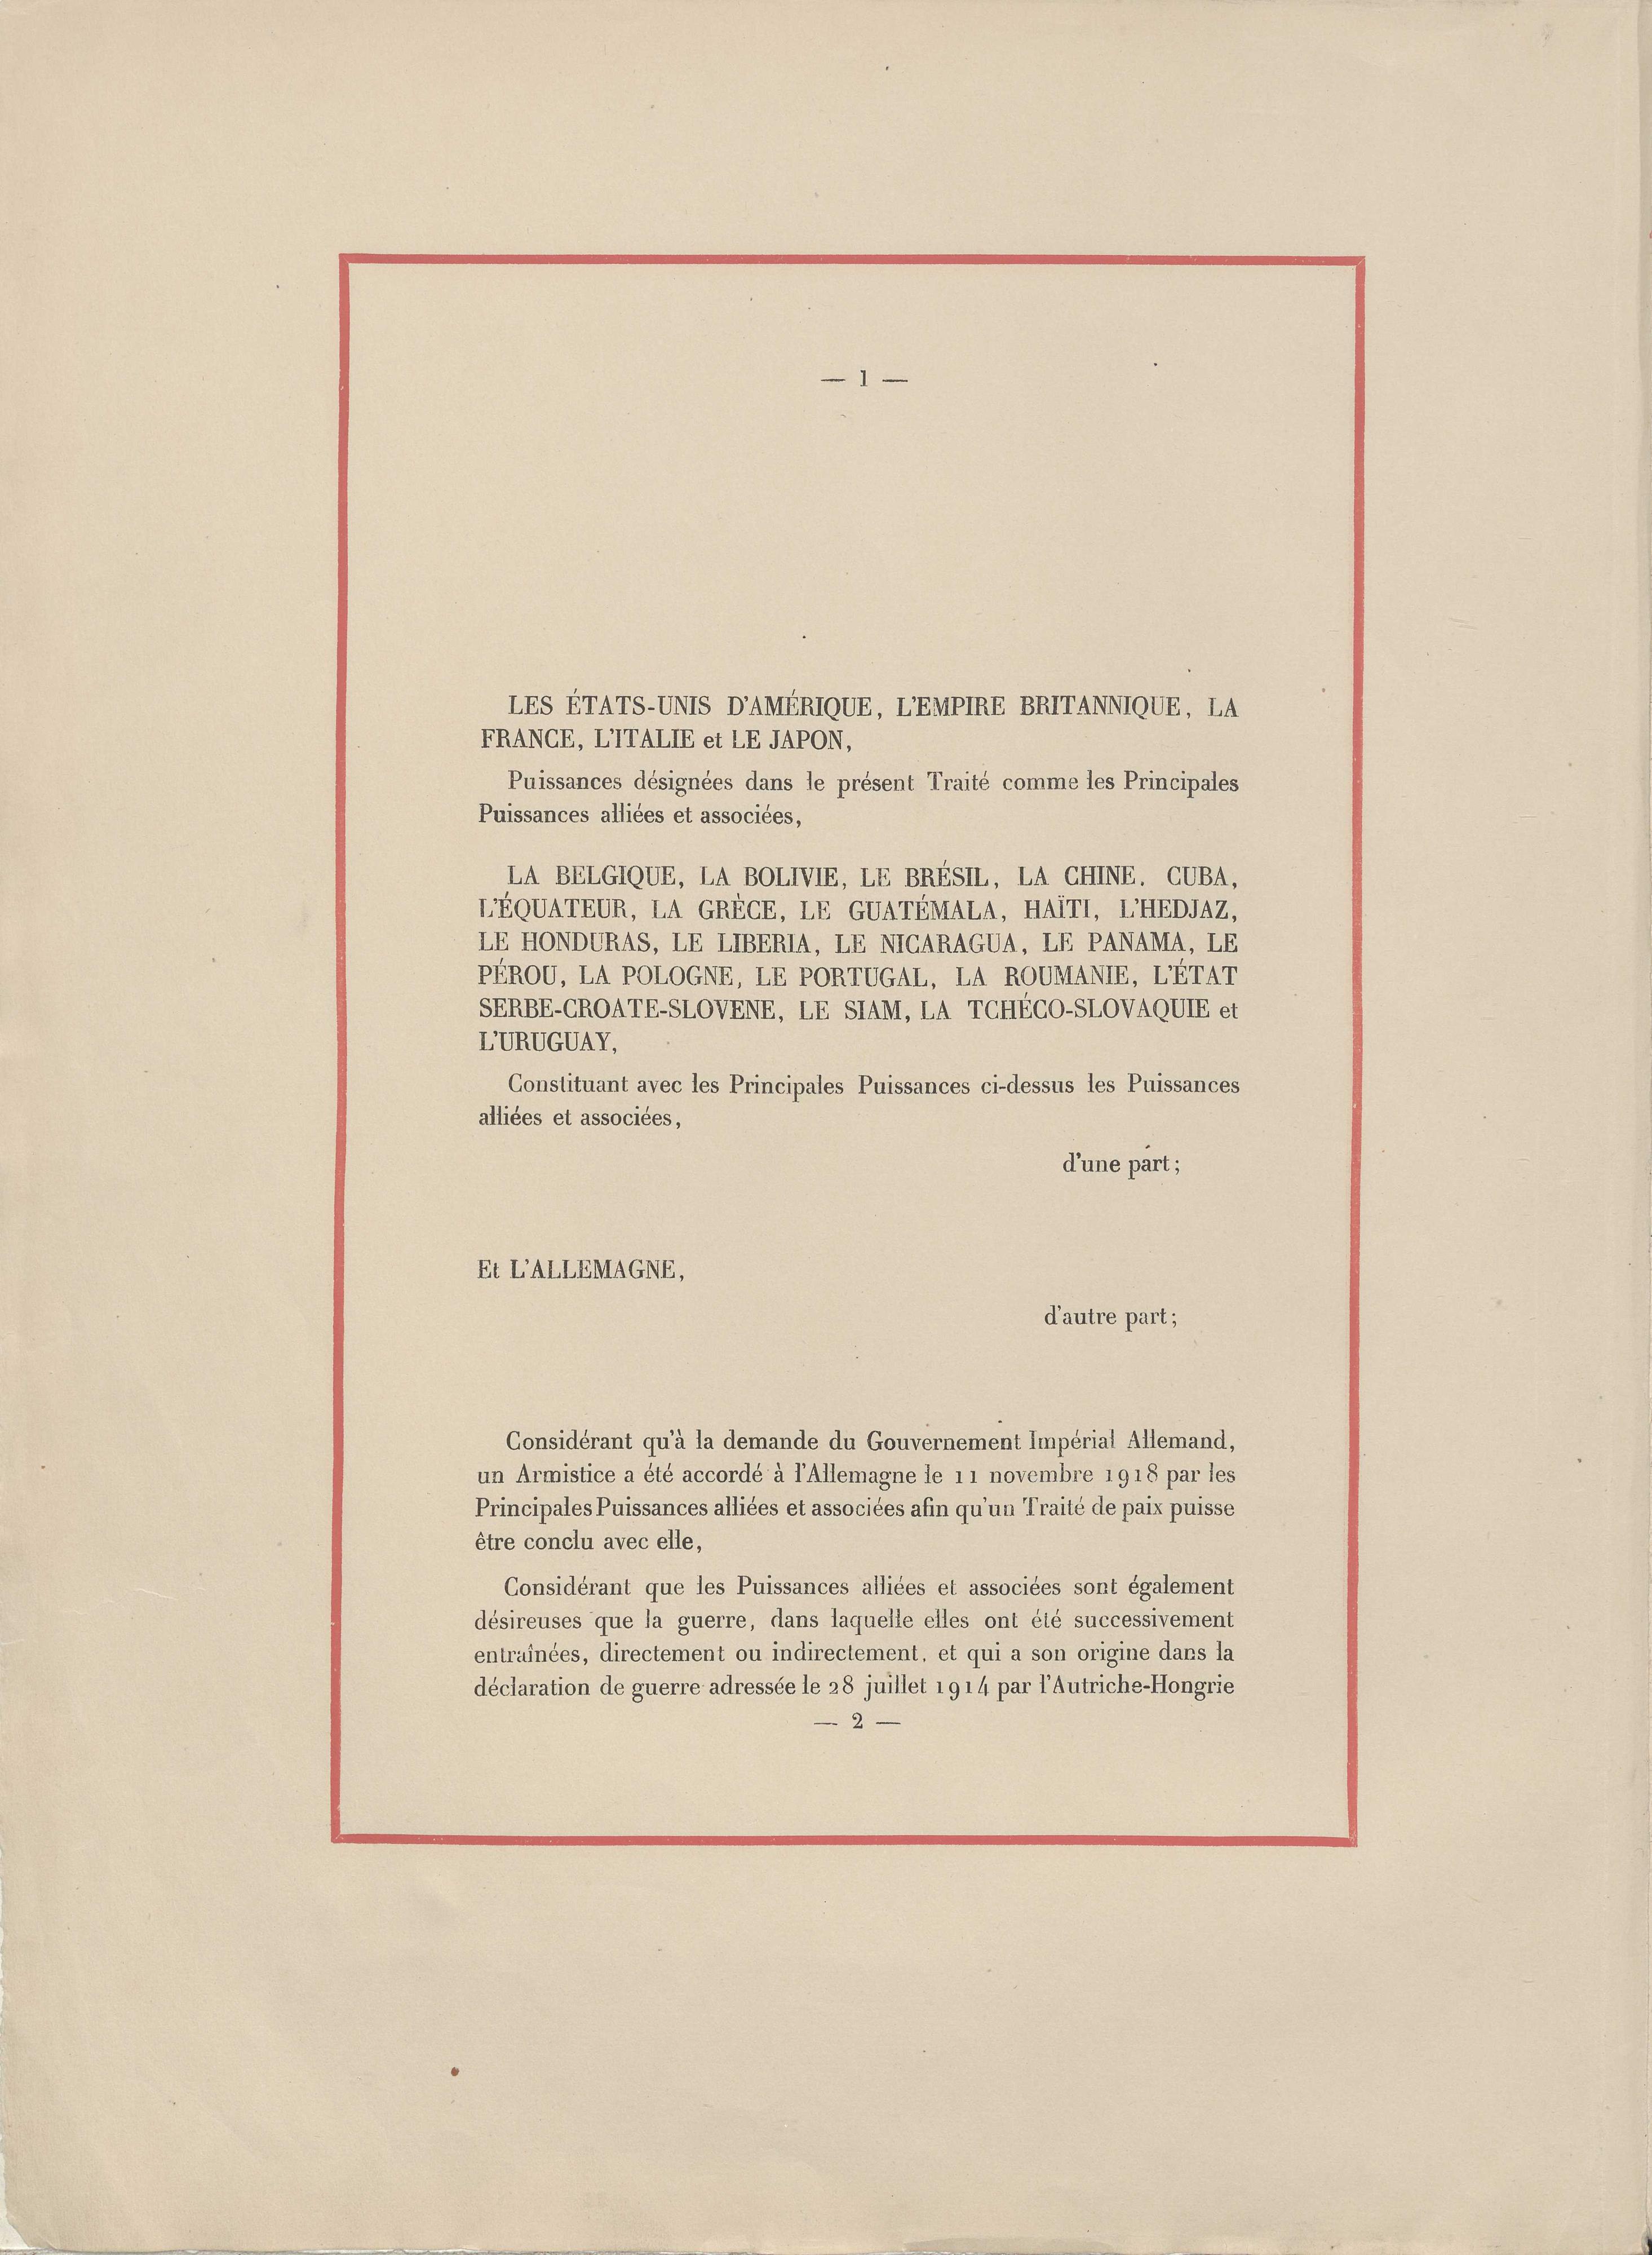 Über das hier dargestellte besondere Dokument wird in der Rubrik Regest und Formalbeschreibung informiert. Hier ist die Seite eins der französischen Fassung zu sehen.